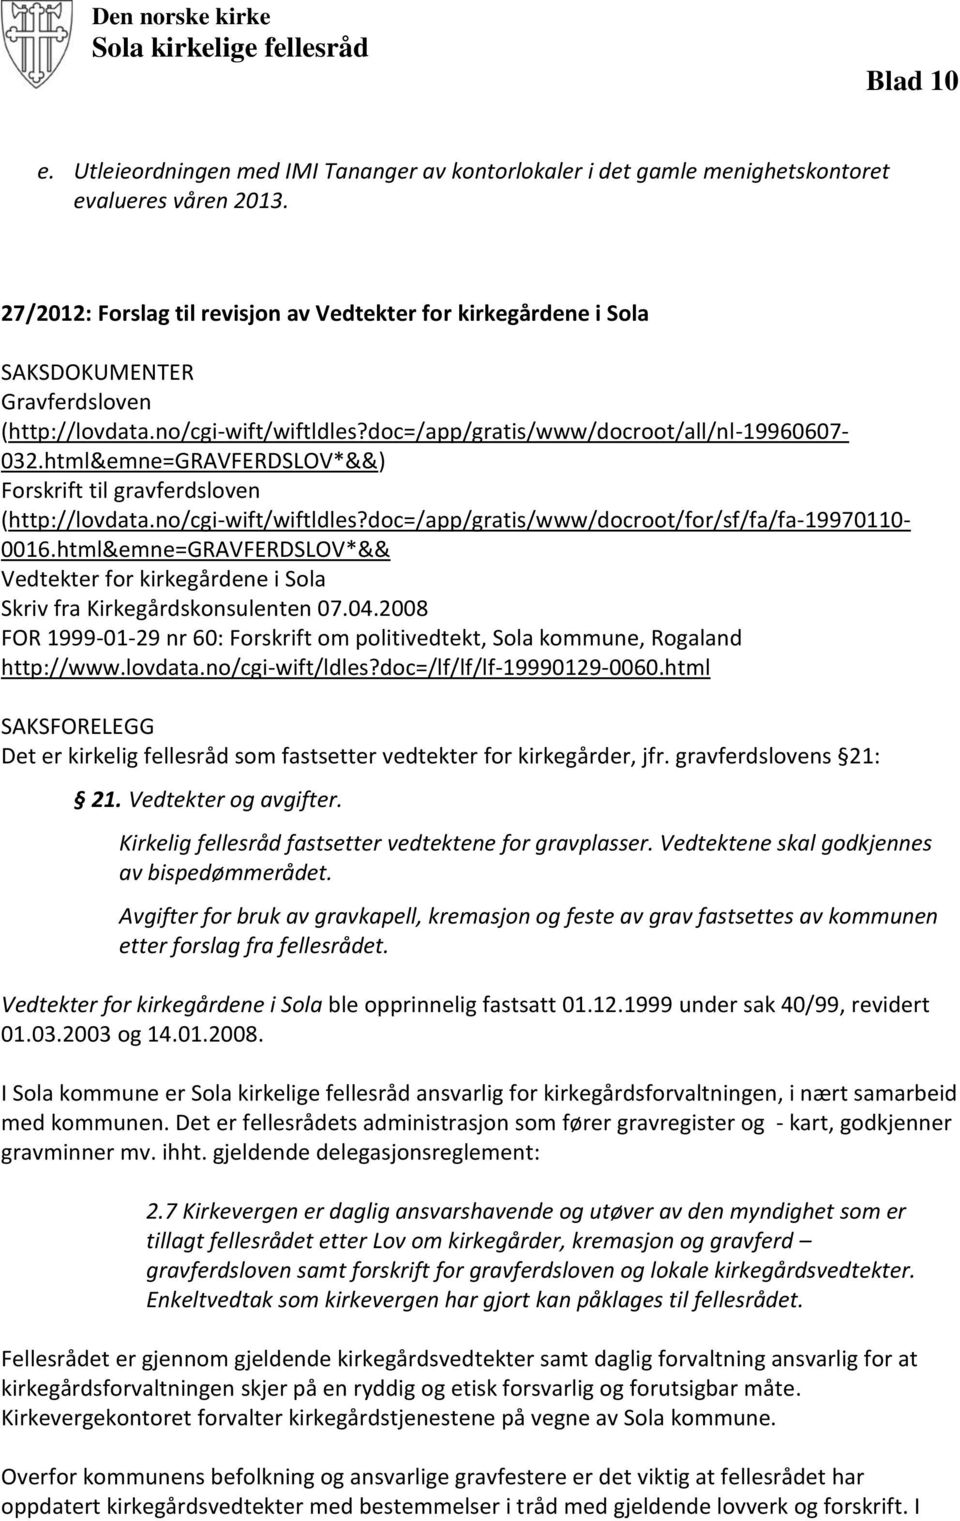 html&emne=gravferdslov*&&) Forskrift til gravferdsloven (http://lovdata.no/cgi-wift/wiftldles?doc=/app/gratis/www/docroot/for/sf/fa/fa-19970110-0016.